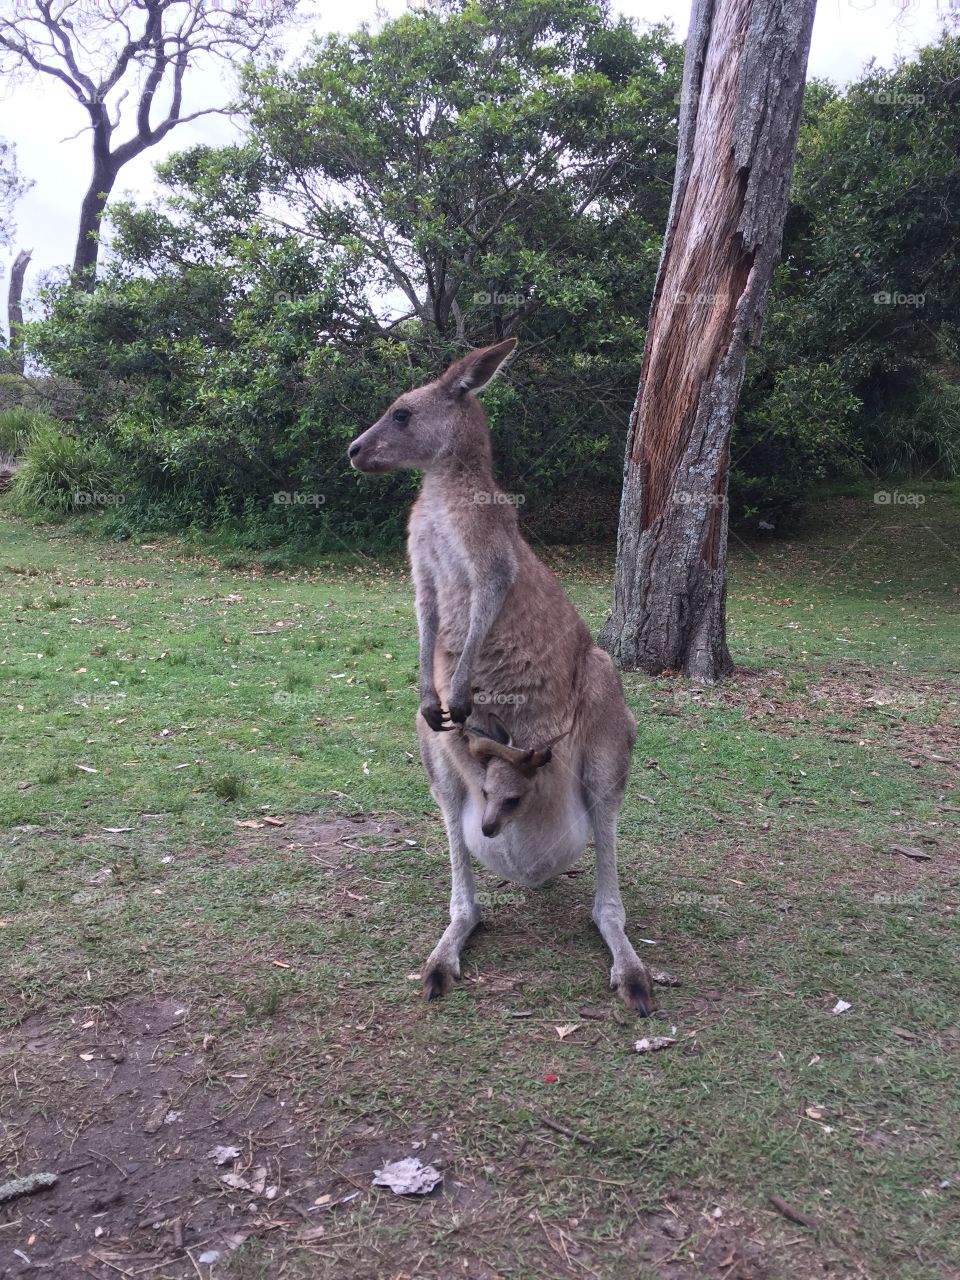 Baby Kangaroo with mum